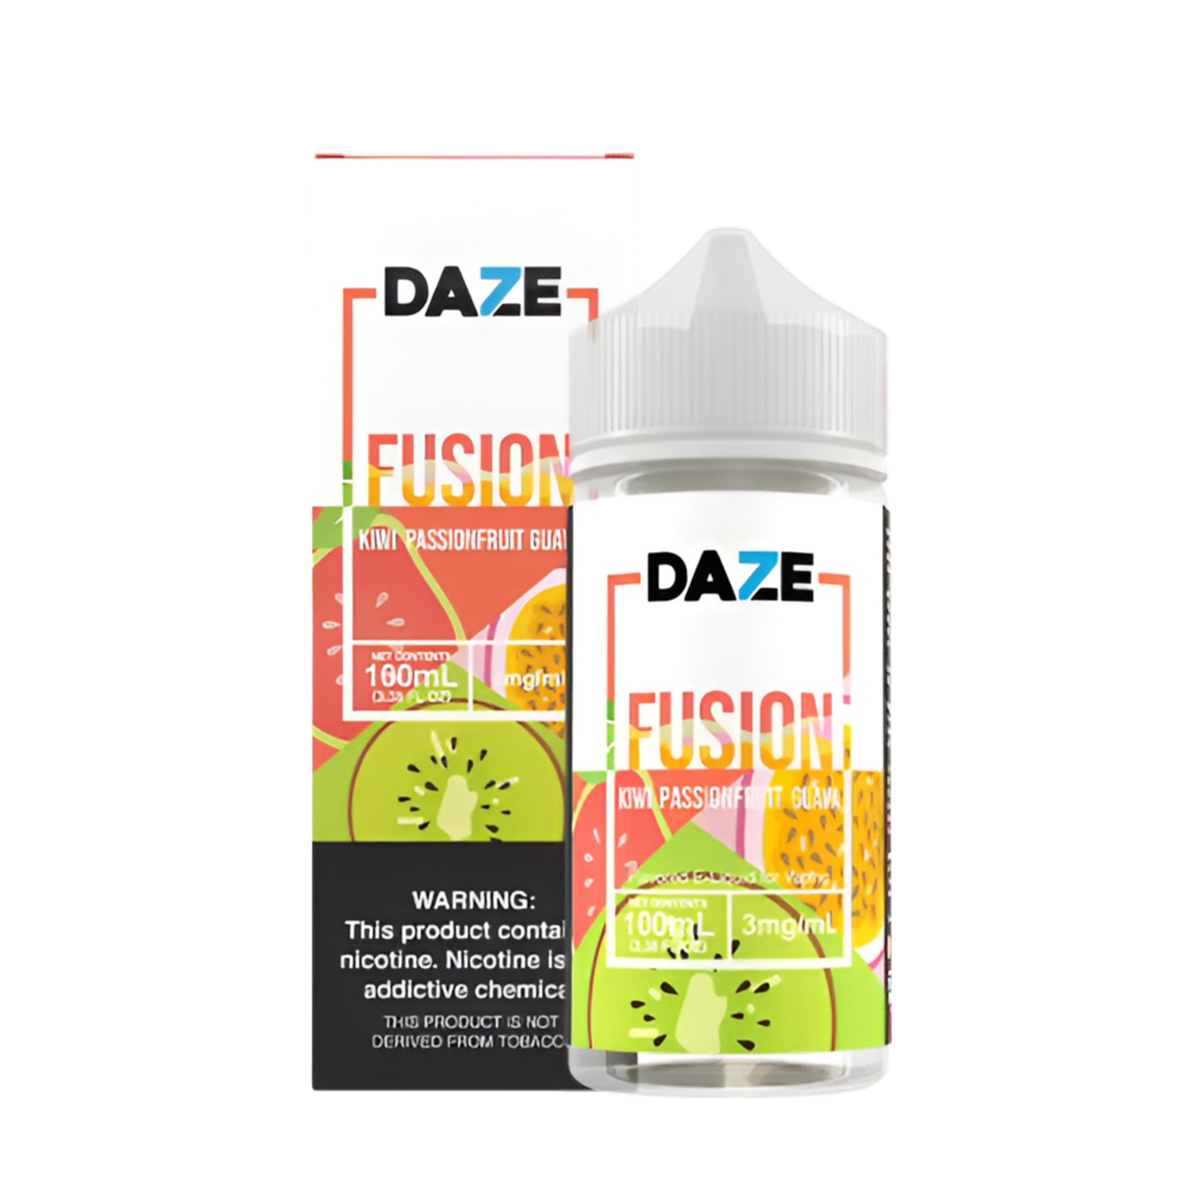 7 Daze Fusion Freebase Vape Juice 0 Mg 100 ML Kiwi Passionfruit Guava